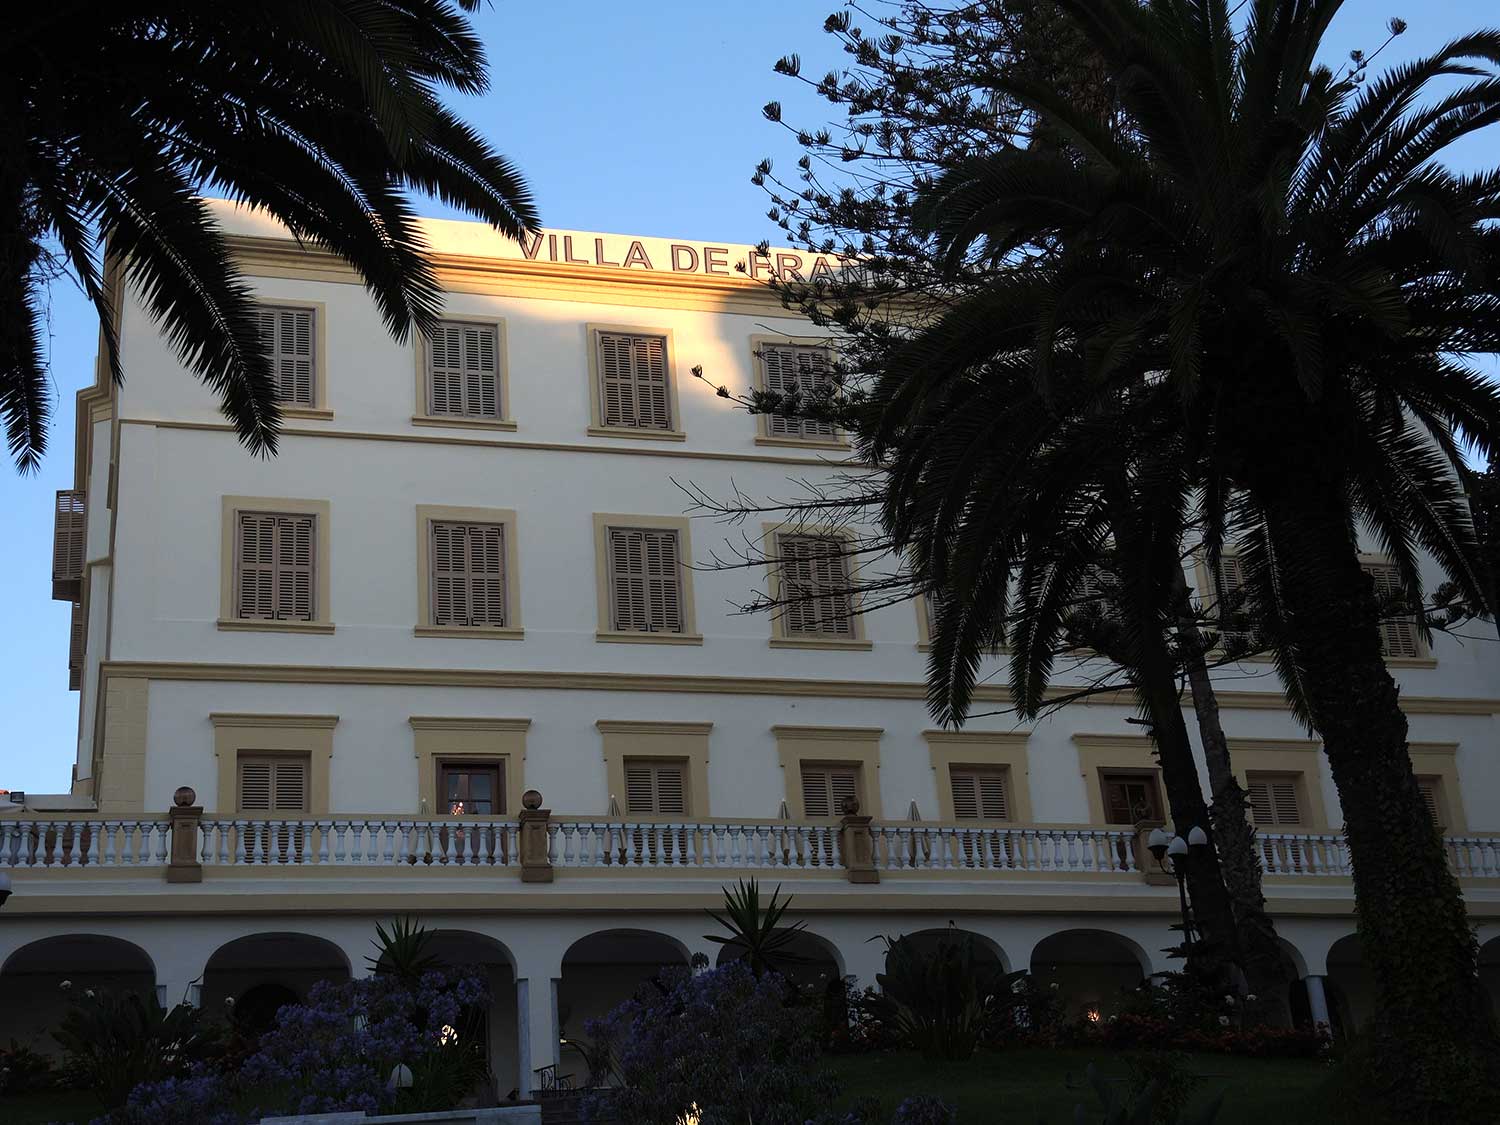 Grand Hotel Villa de France - Exterior view of the entrance facade